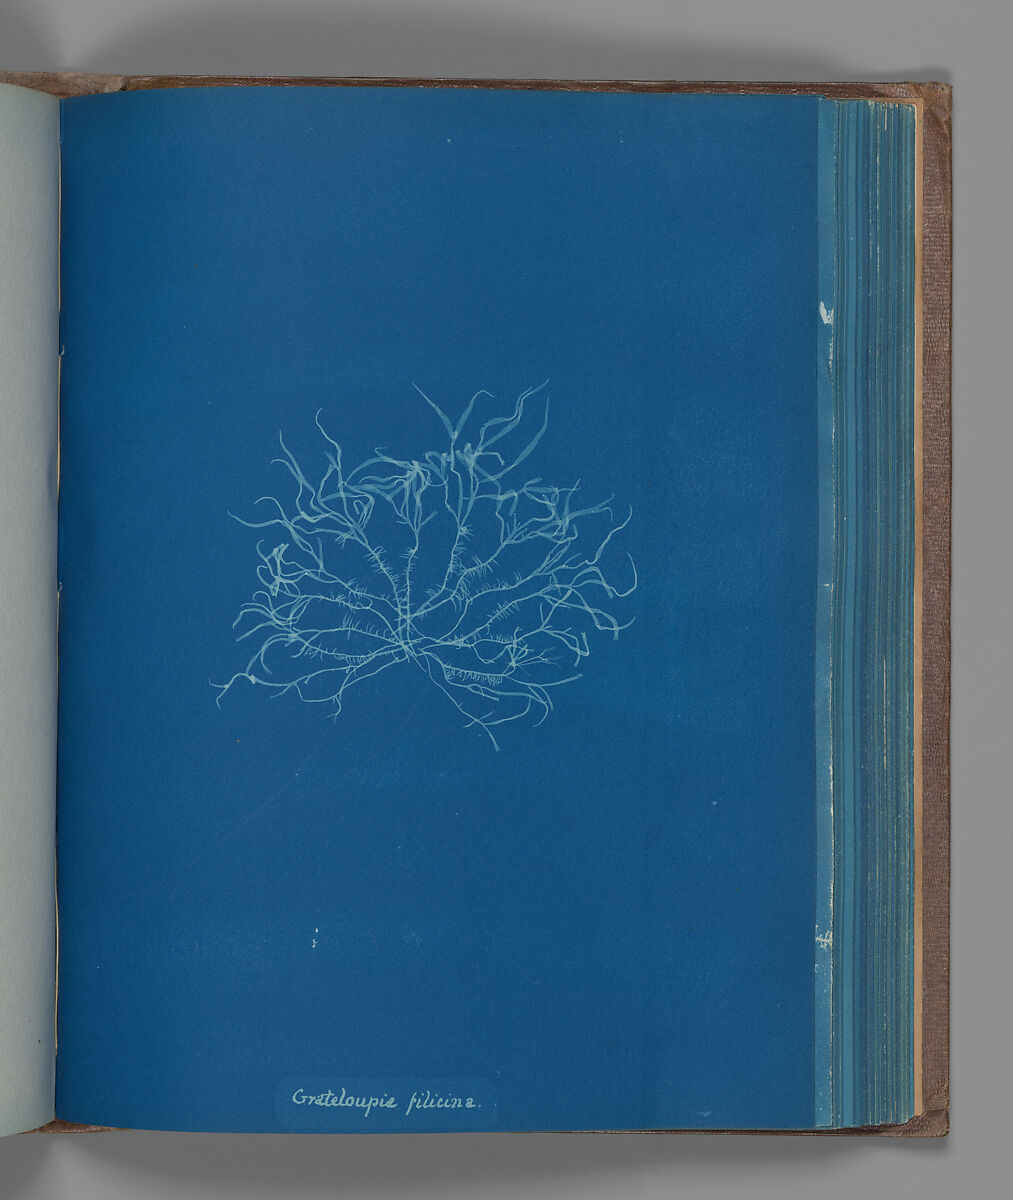 Grateloupia filicina, Anna Atkins (British, 1799–1871), Cyanotype 